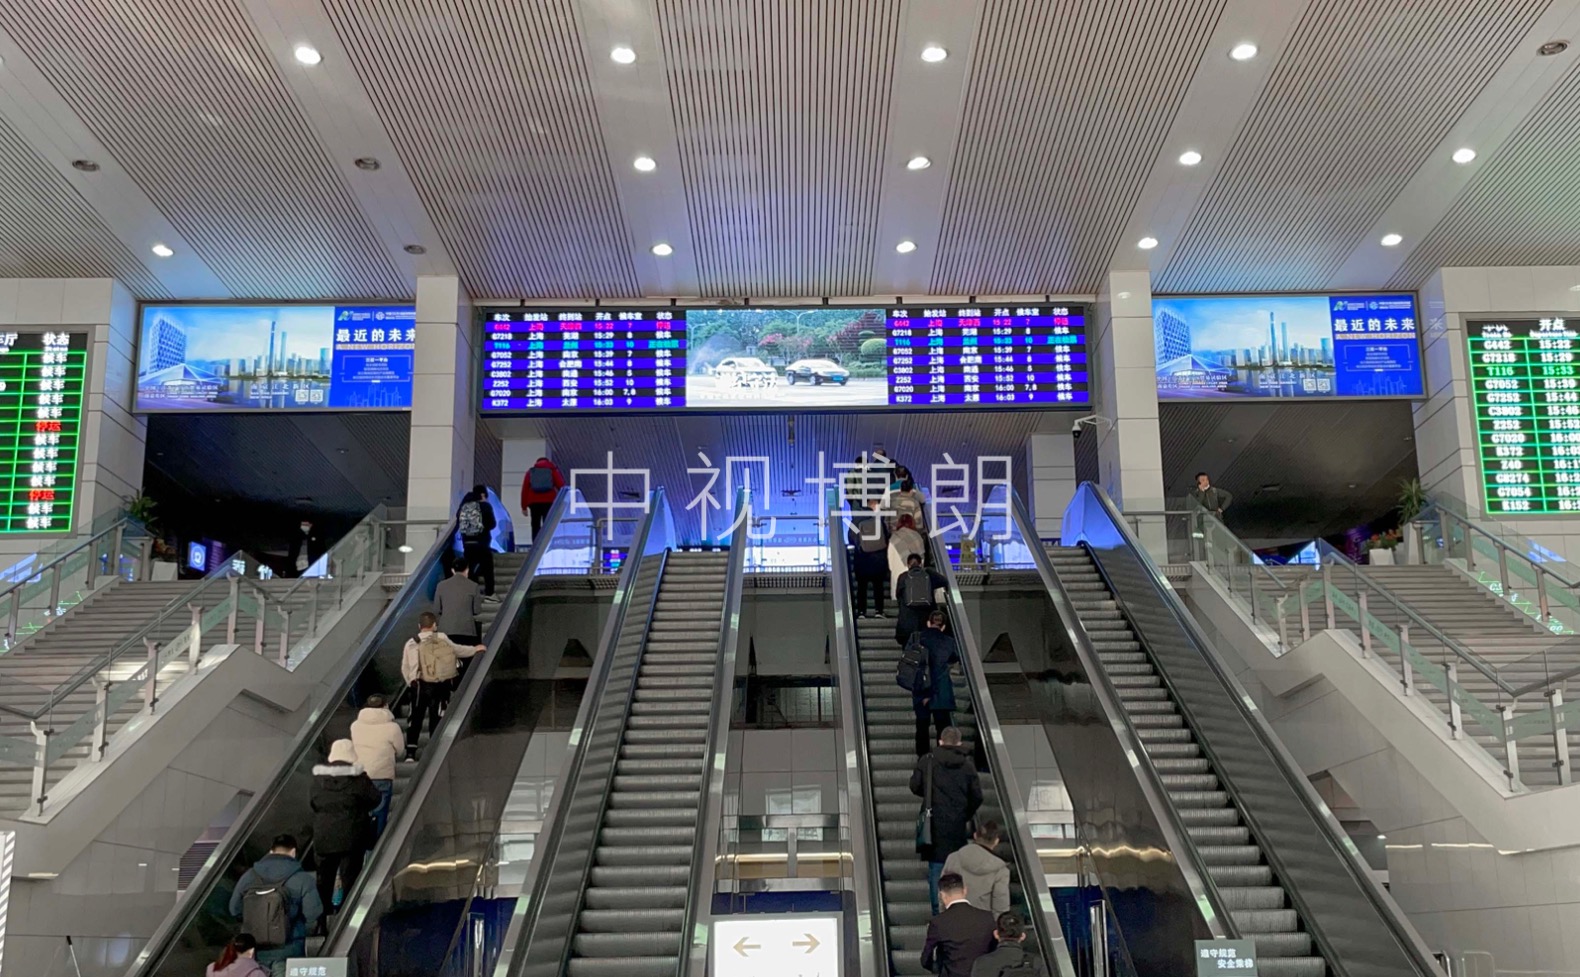 上海站广告-进站大厅南端入口悬挂灯箱